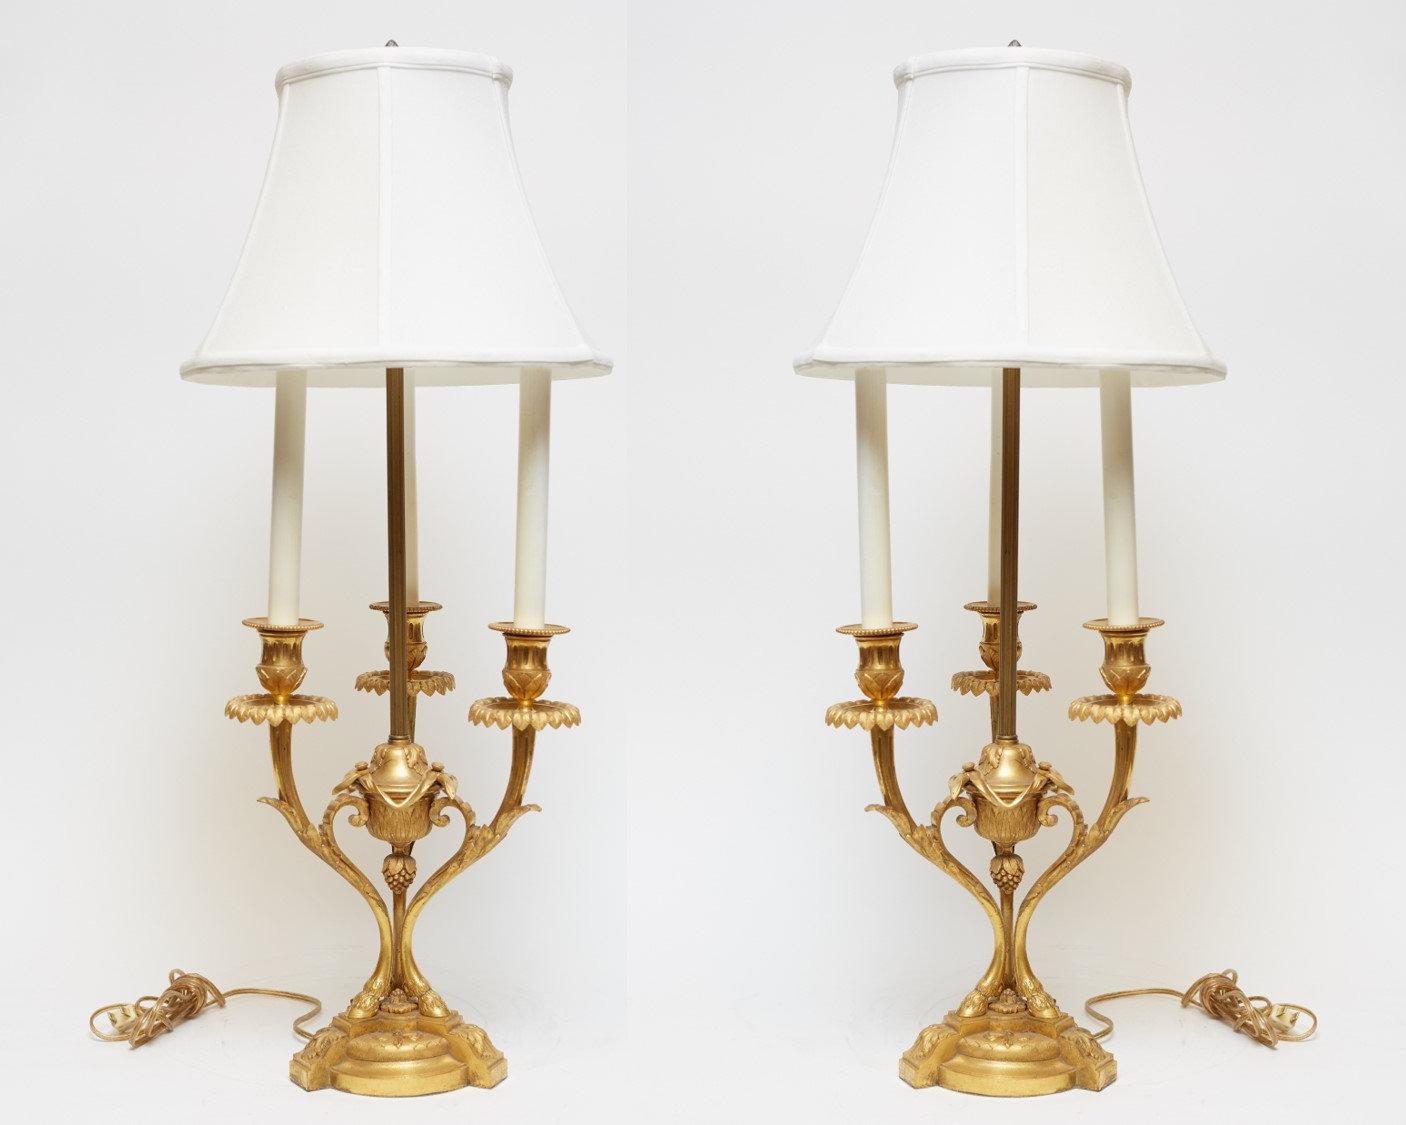 Zwei antike Kandelaber aus vergoldeter Bronze im französischen Louis-XVI-Stil, elektrifiziert mit modernen Fassungen, Kerzenabdeckungen und Kabeln, mit Eichelknäufen aus Zinn. Schattierungen sind nicht verfügbar.